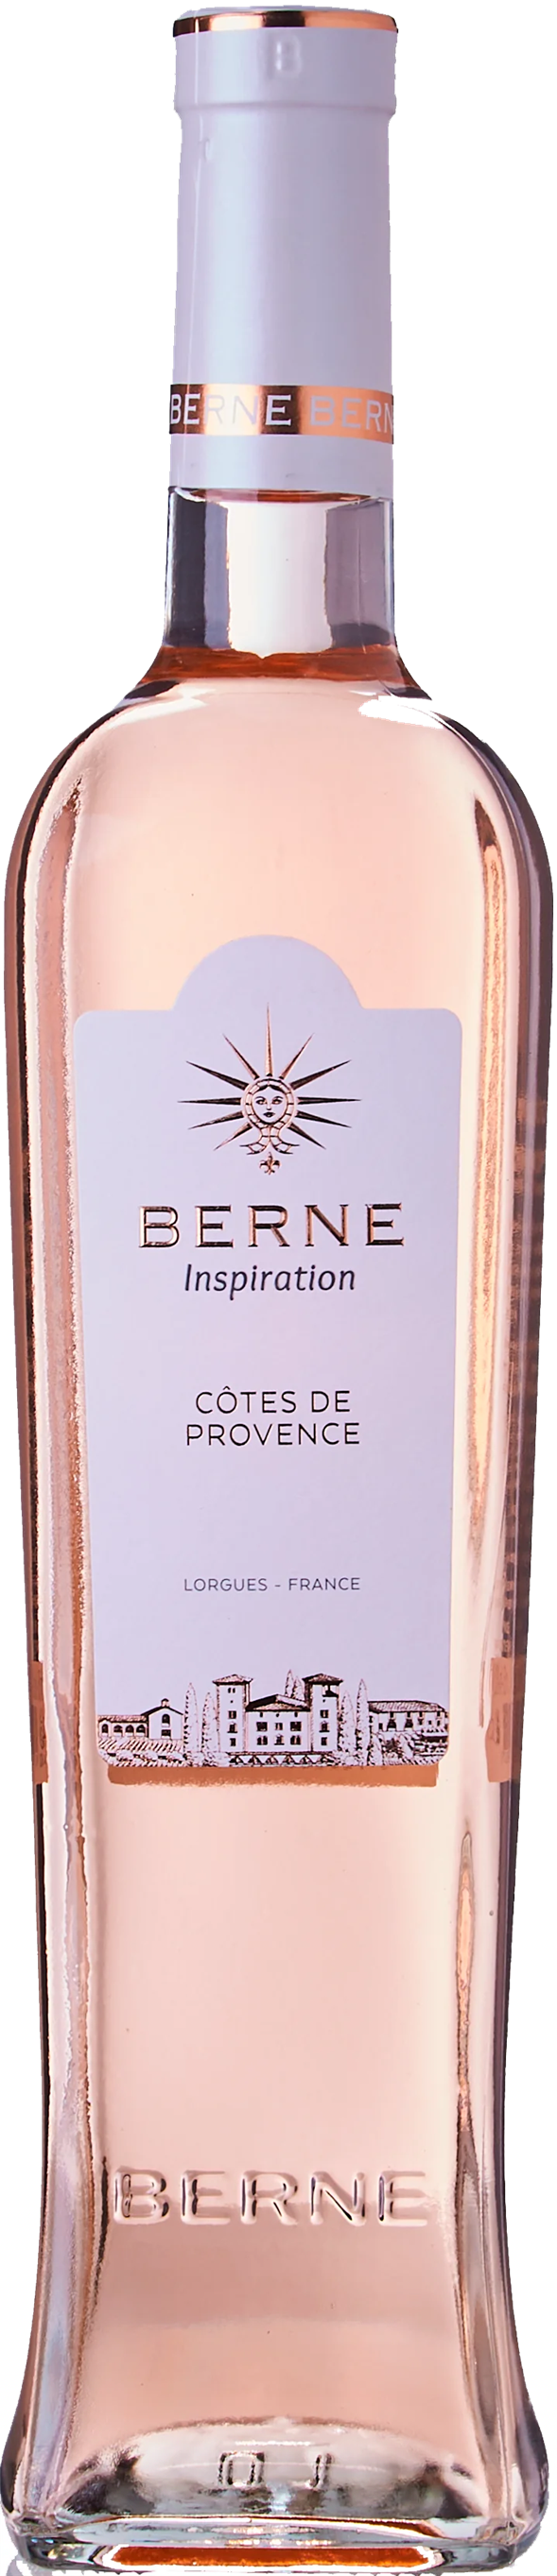 Chateau de Berne, Inspiration - Côtes de Provence Rosé 2021